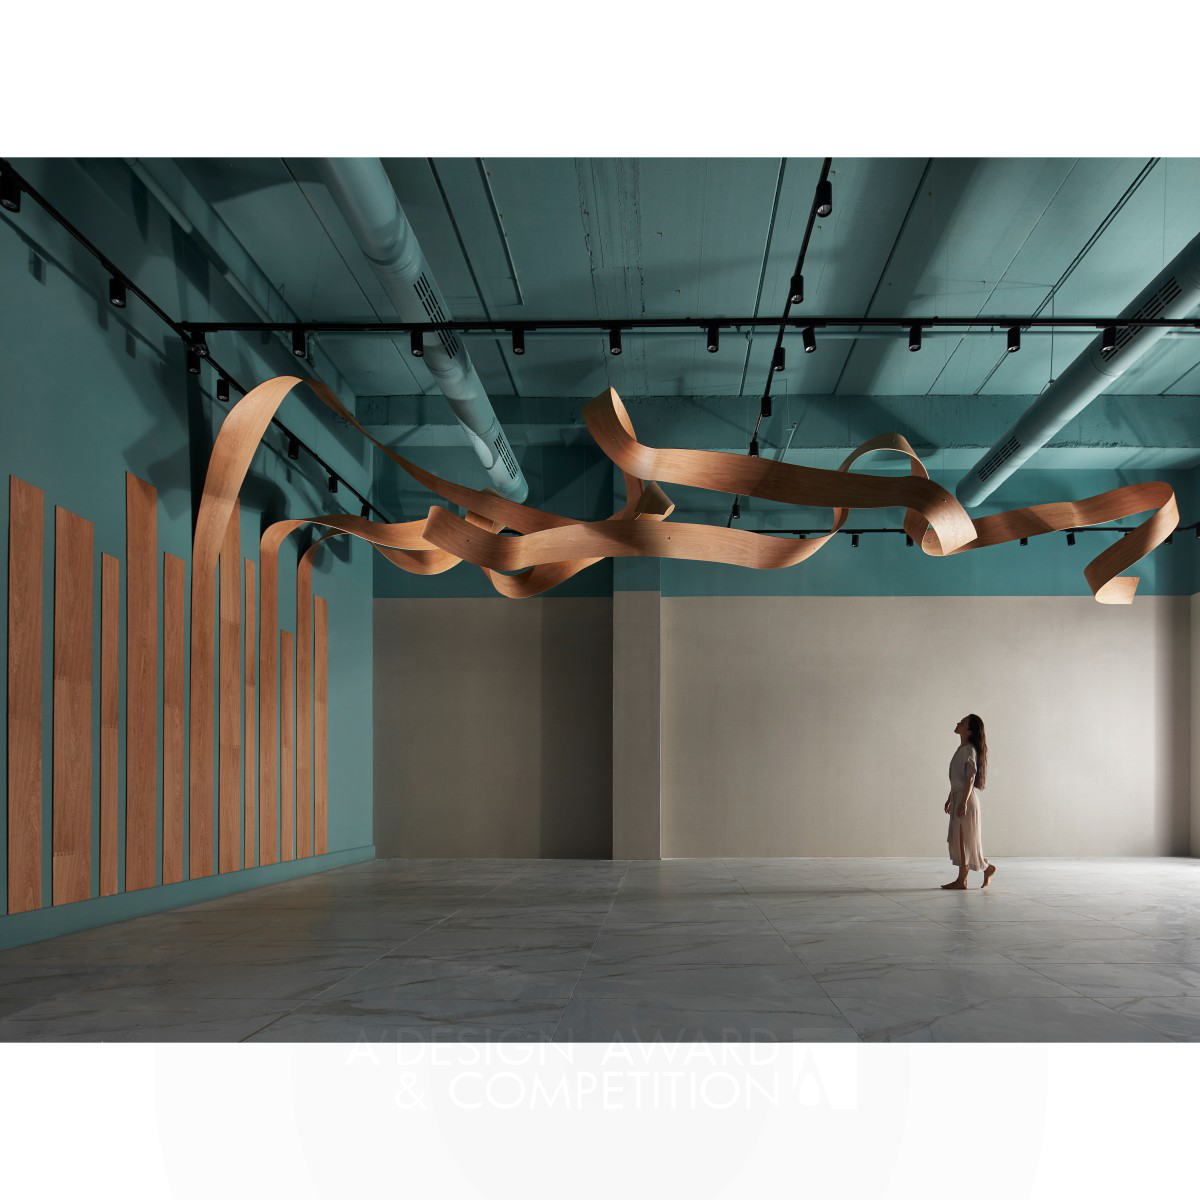 Cozi Studio'nun "Infinity" Tasarımı: İç Mekanın Sınırsız Dansı